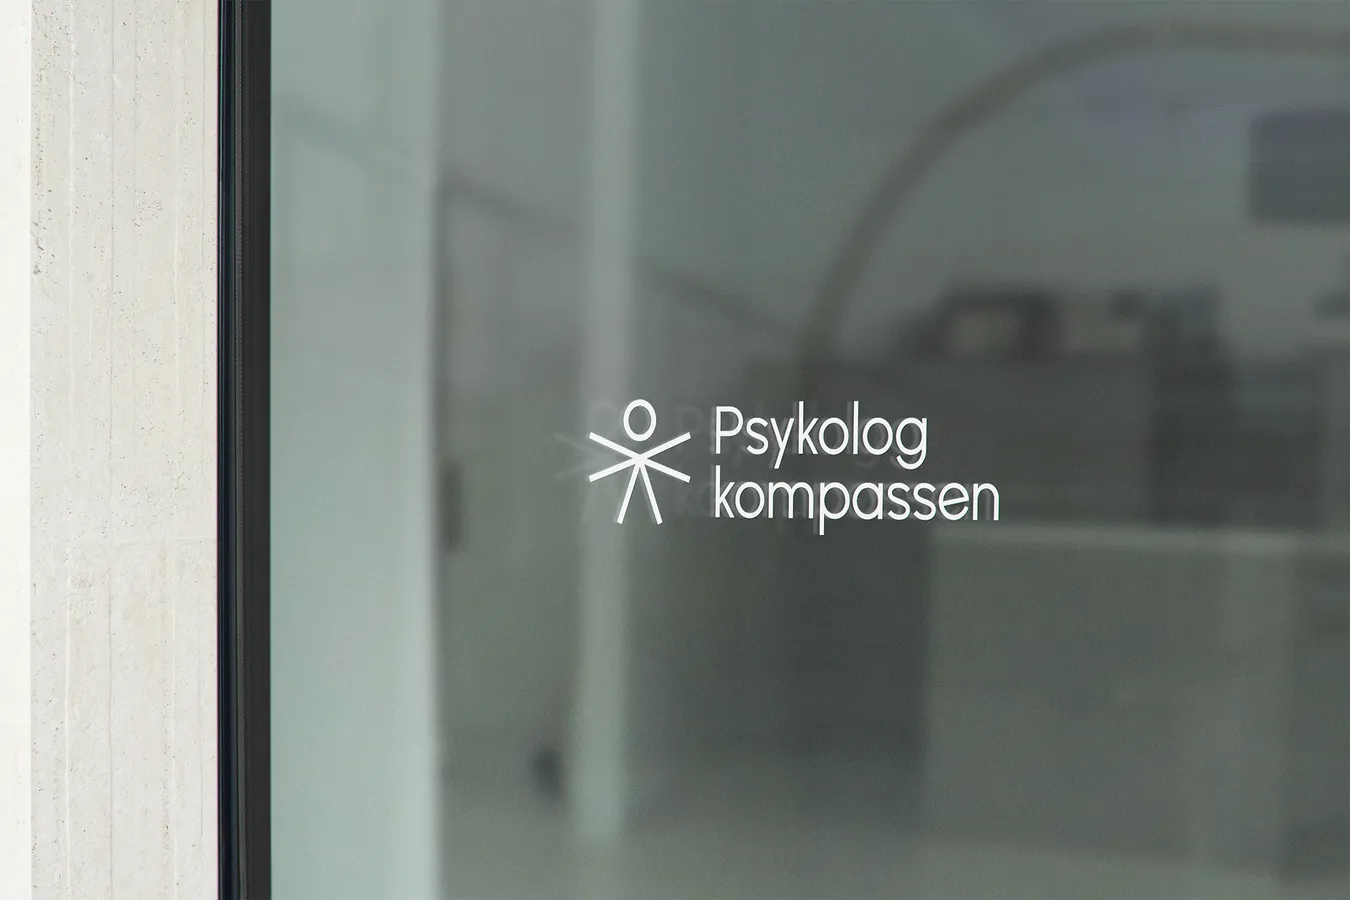 Psykologkompassen logo presented as a sticker on a window glass